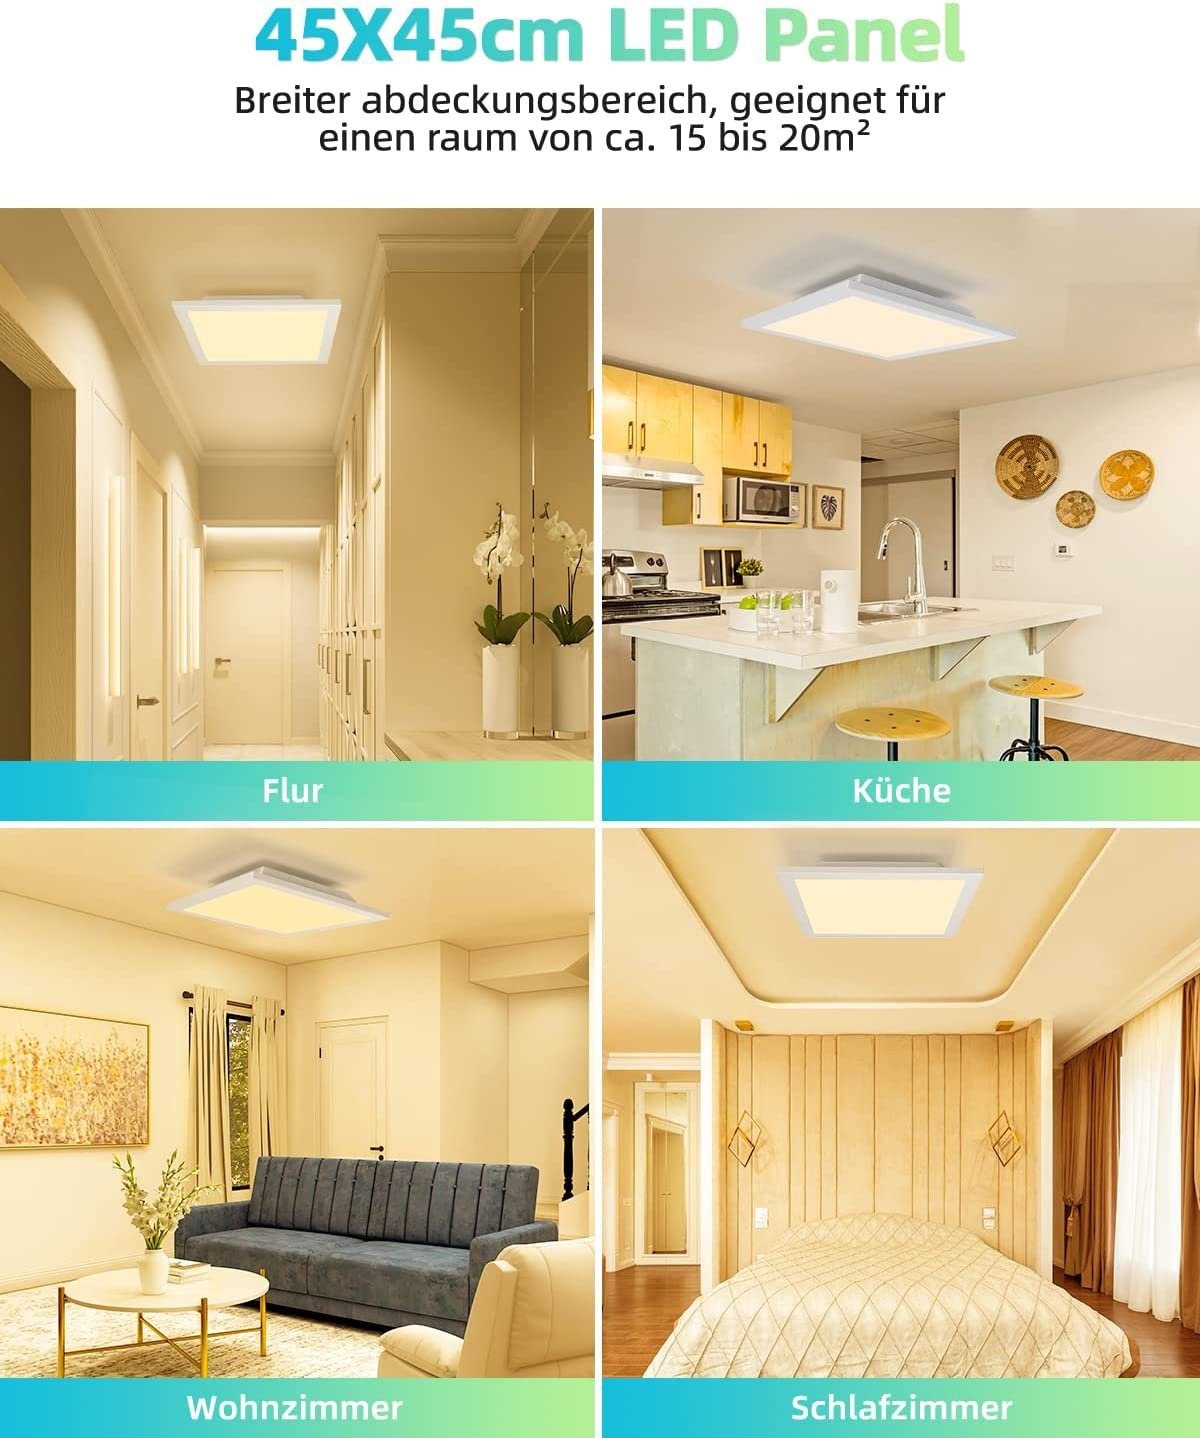 ZMH Deckenleuchten LED Panel für Wohnzimmer,45*45cm/60*60cm, Design 45*45cm Flach Büro, 3000K Warmweiß